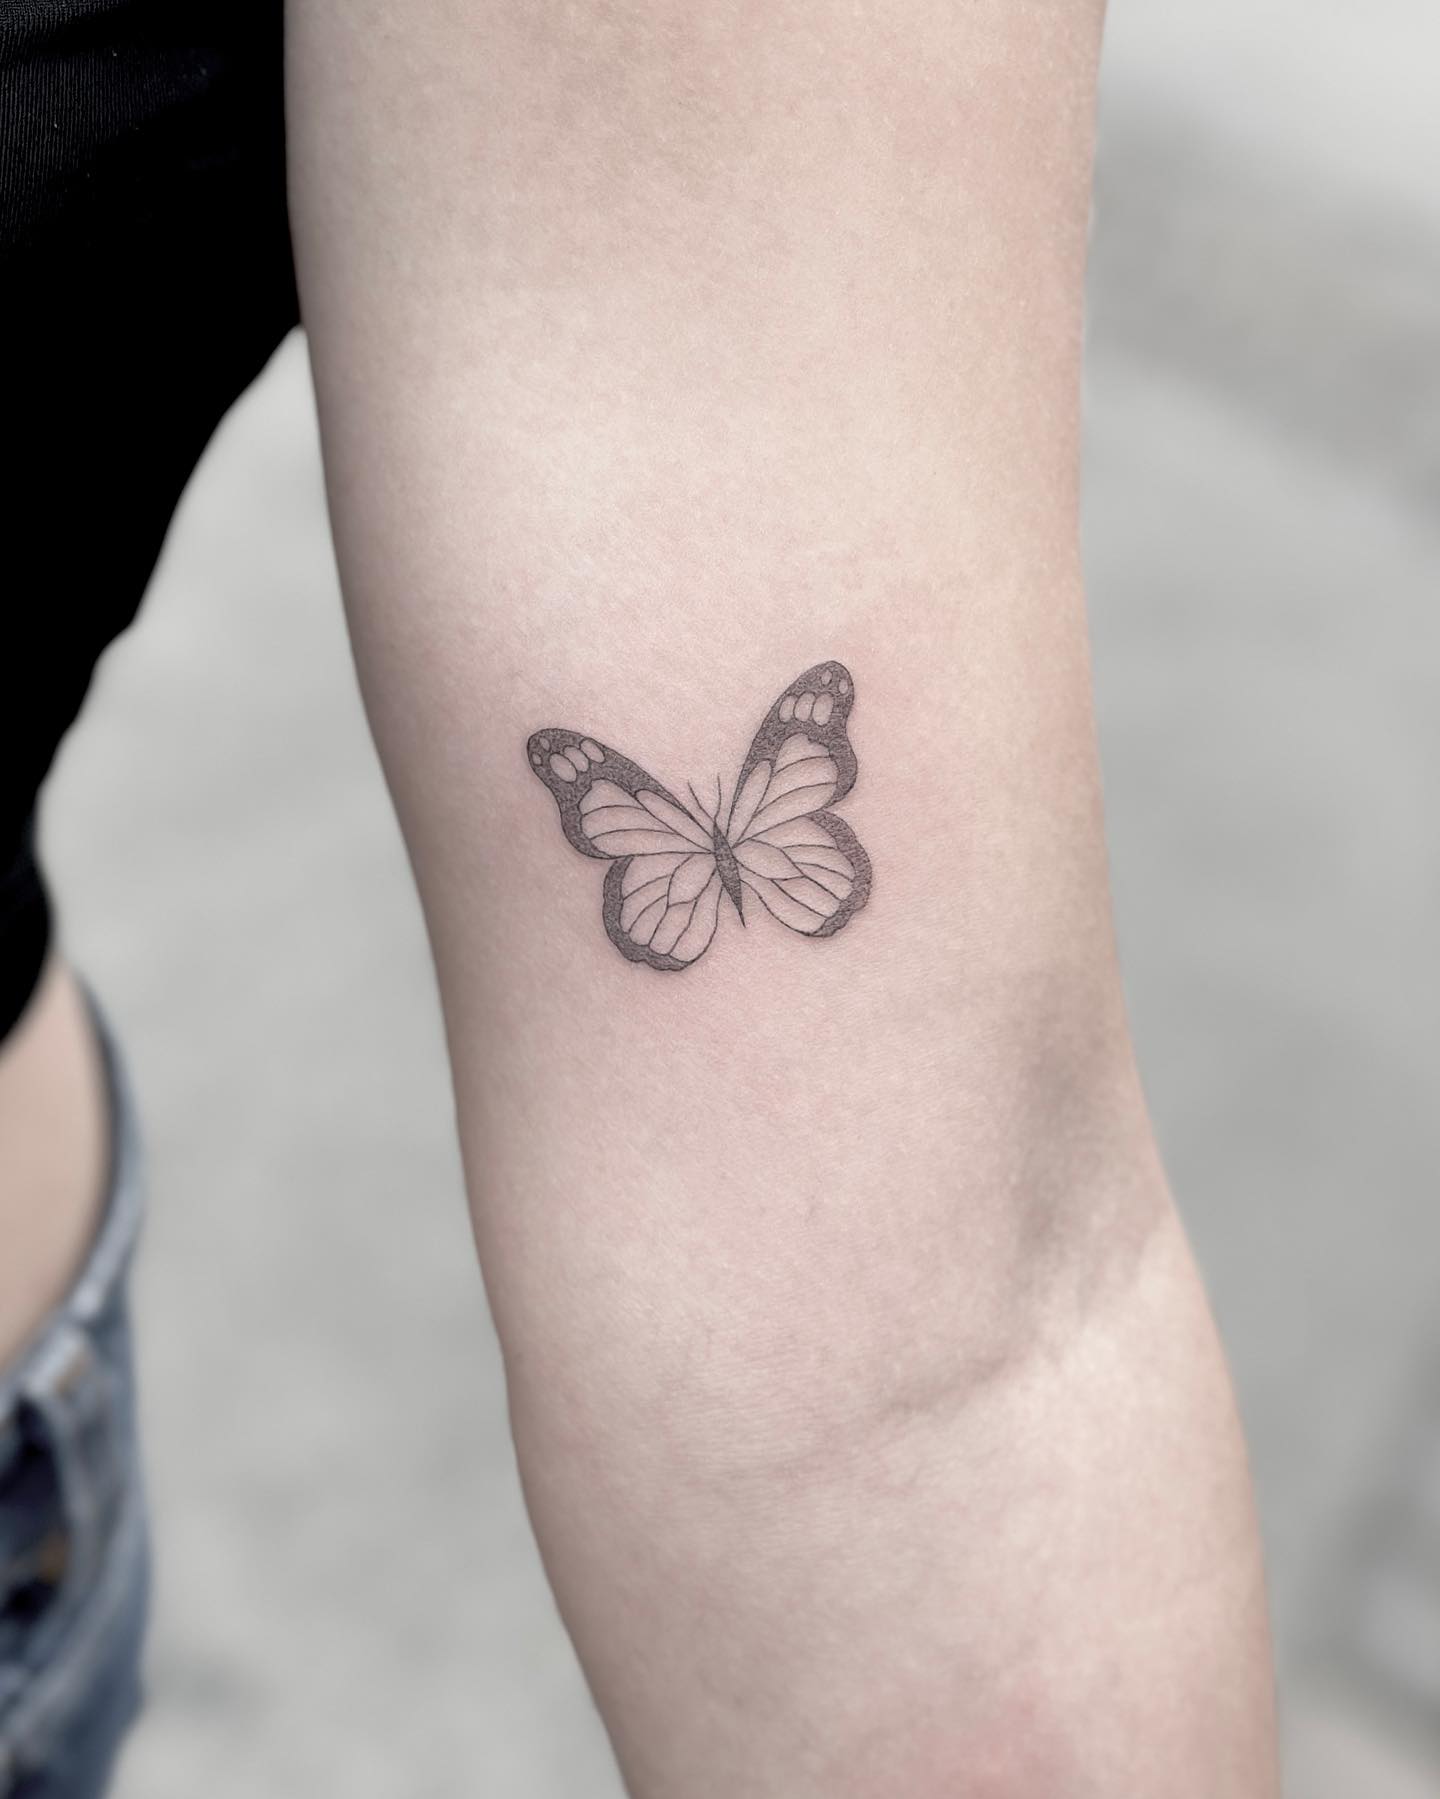 Minimalist Tattoo, Small Tattoo Ideas